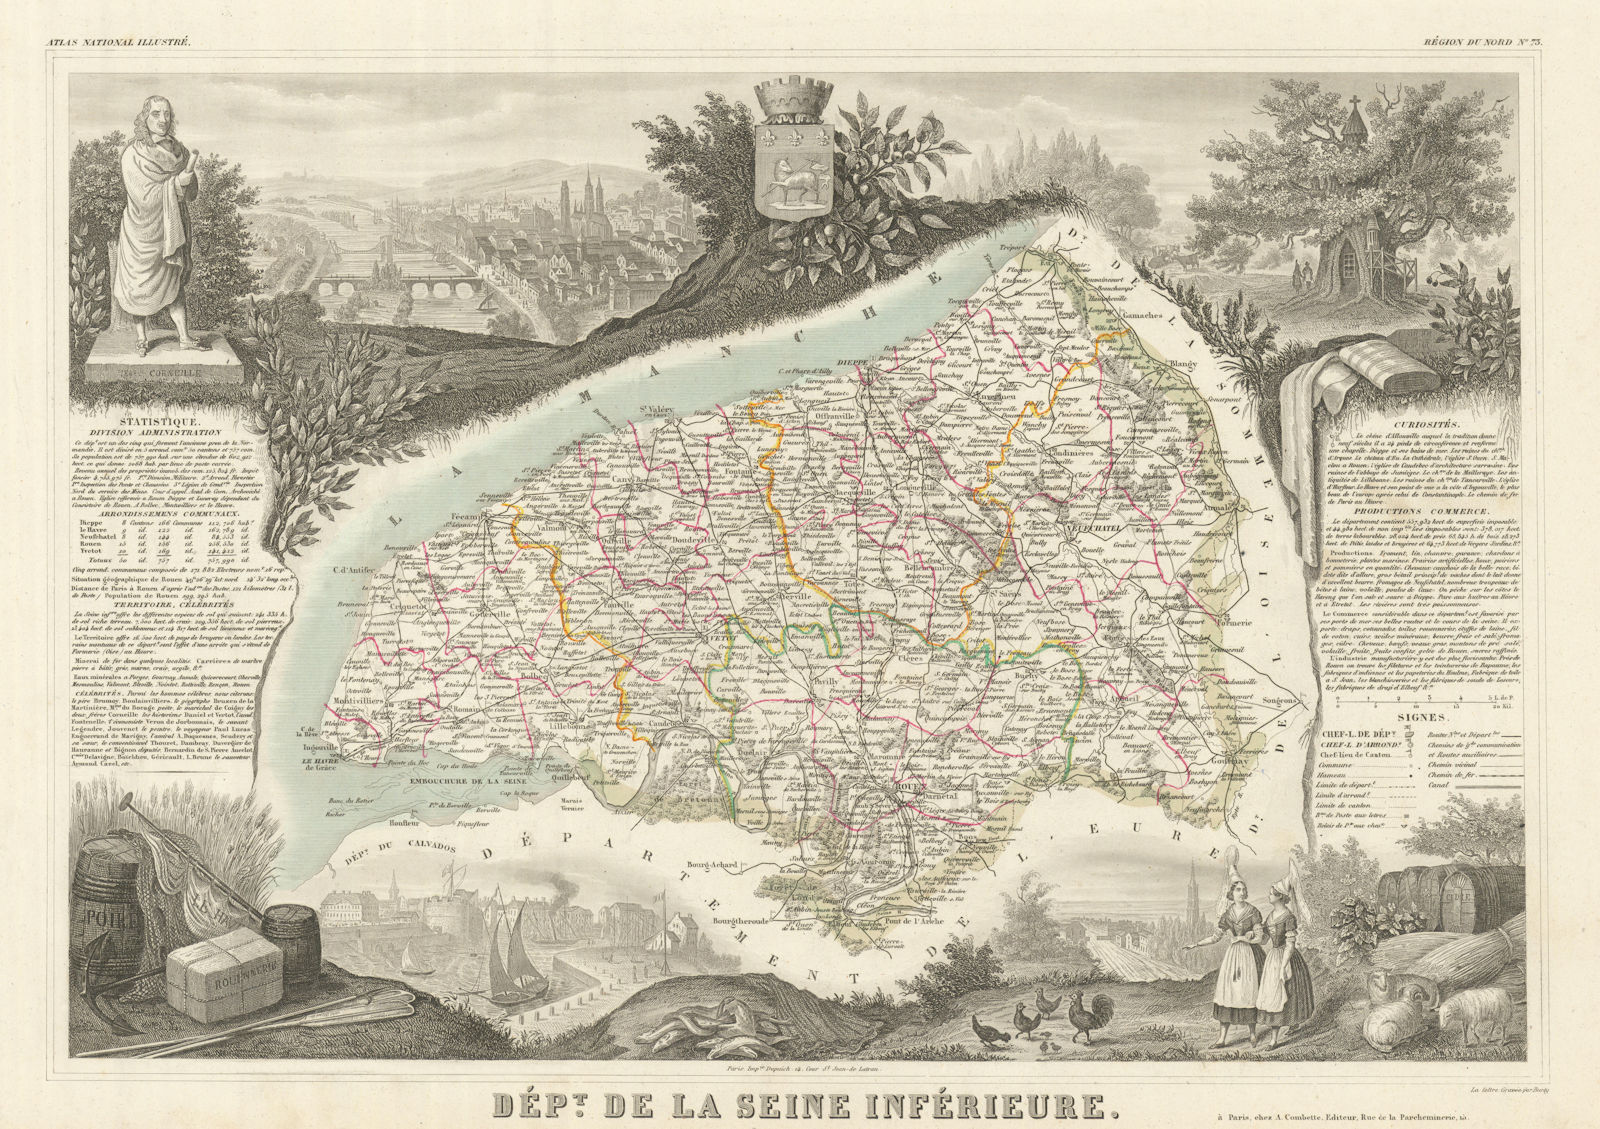 Associate Product Département de la SEINE-INFÉRIEURE. Seine-Maritime. LEVASSEUR 1856 old map